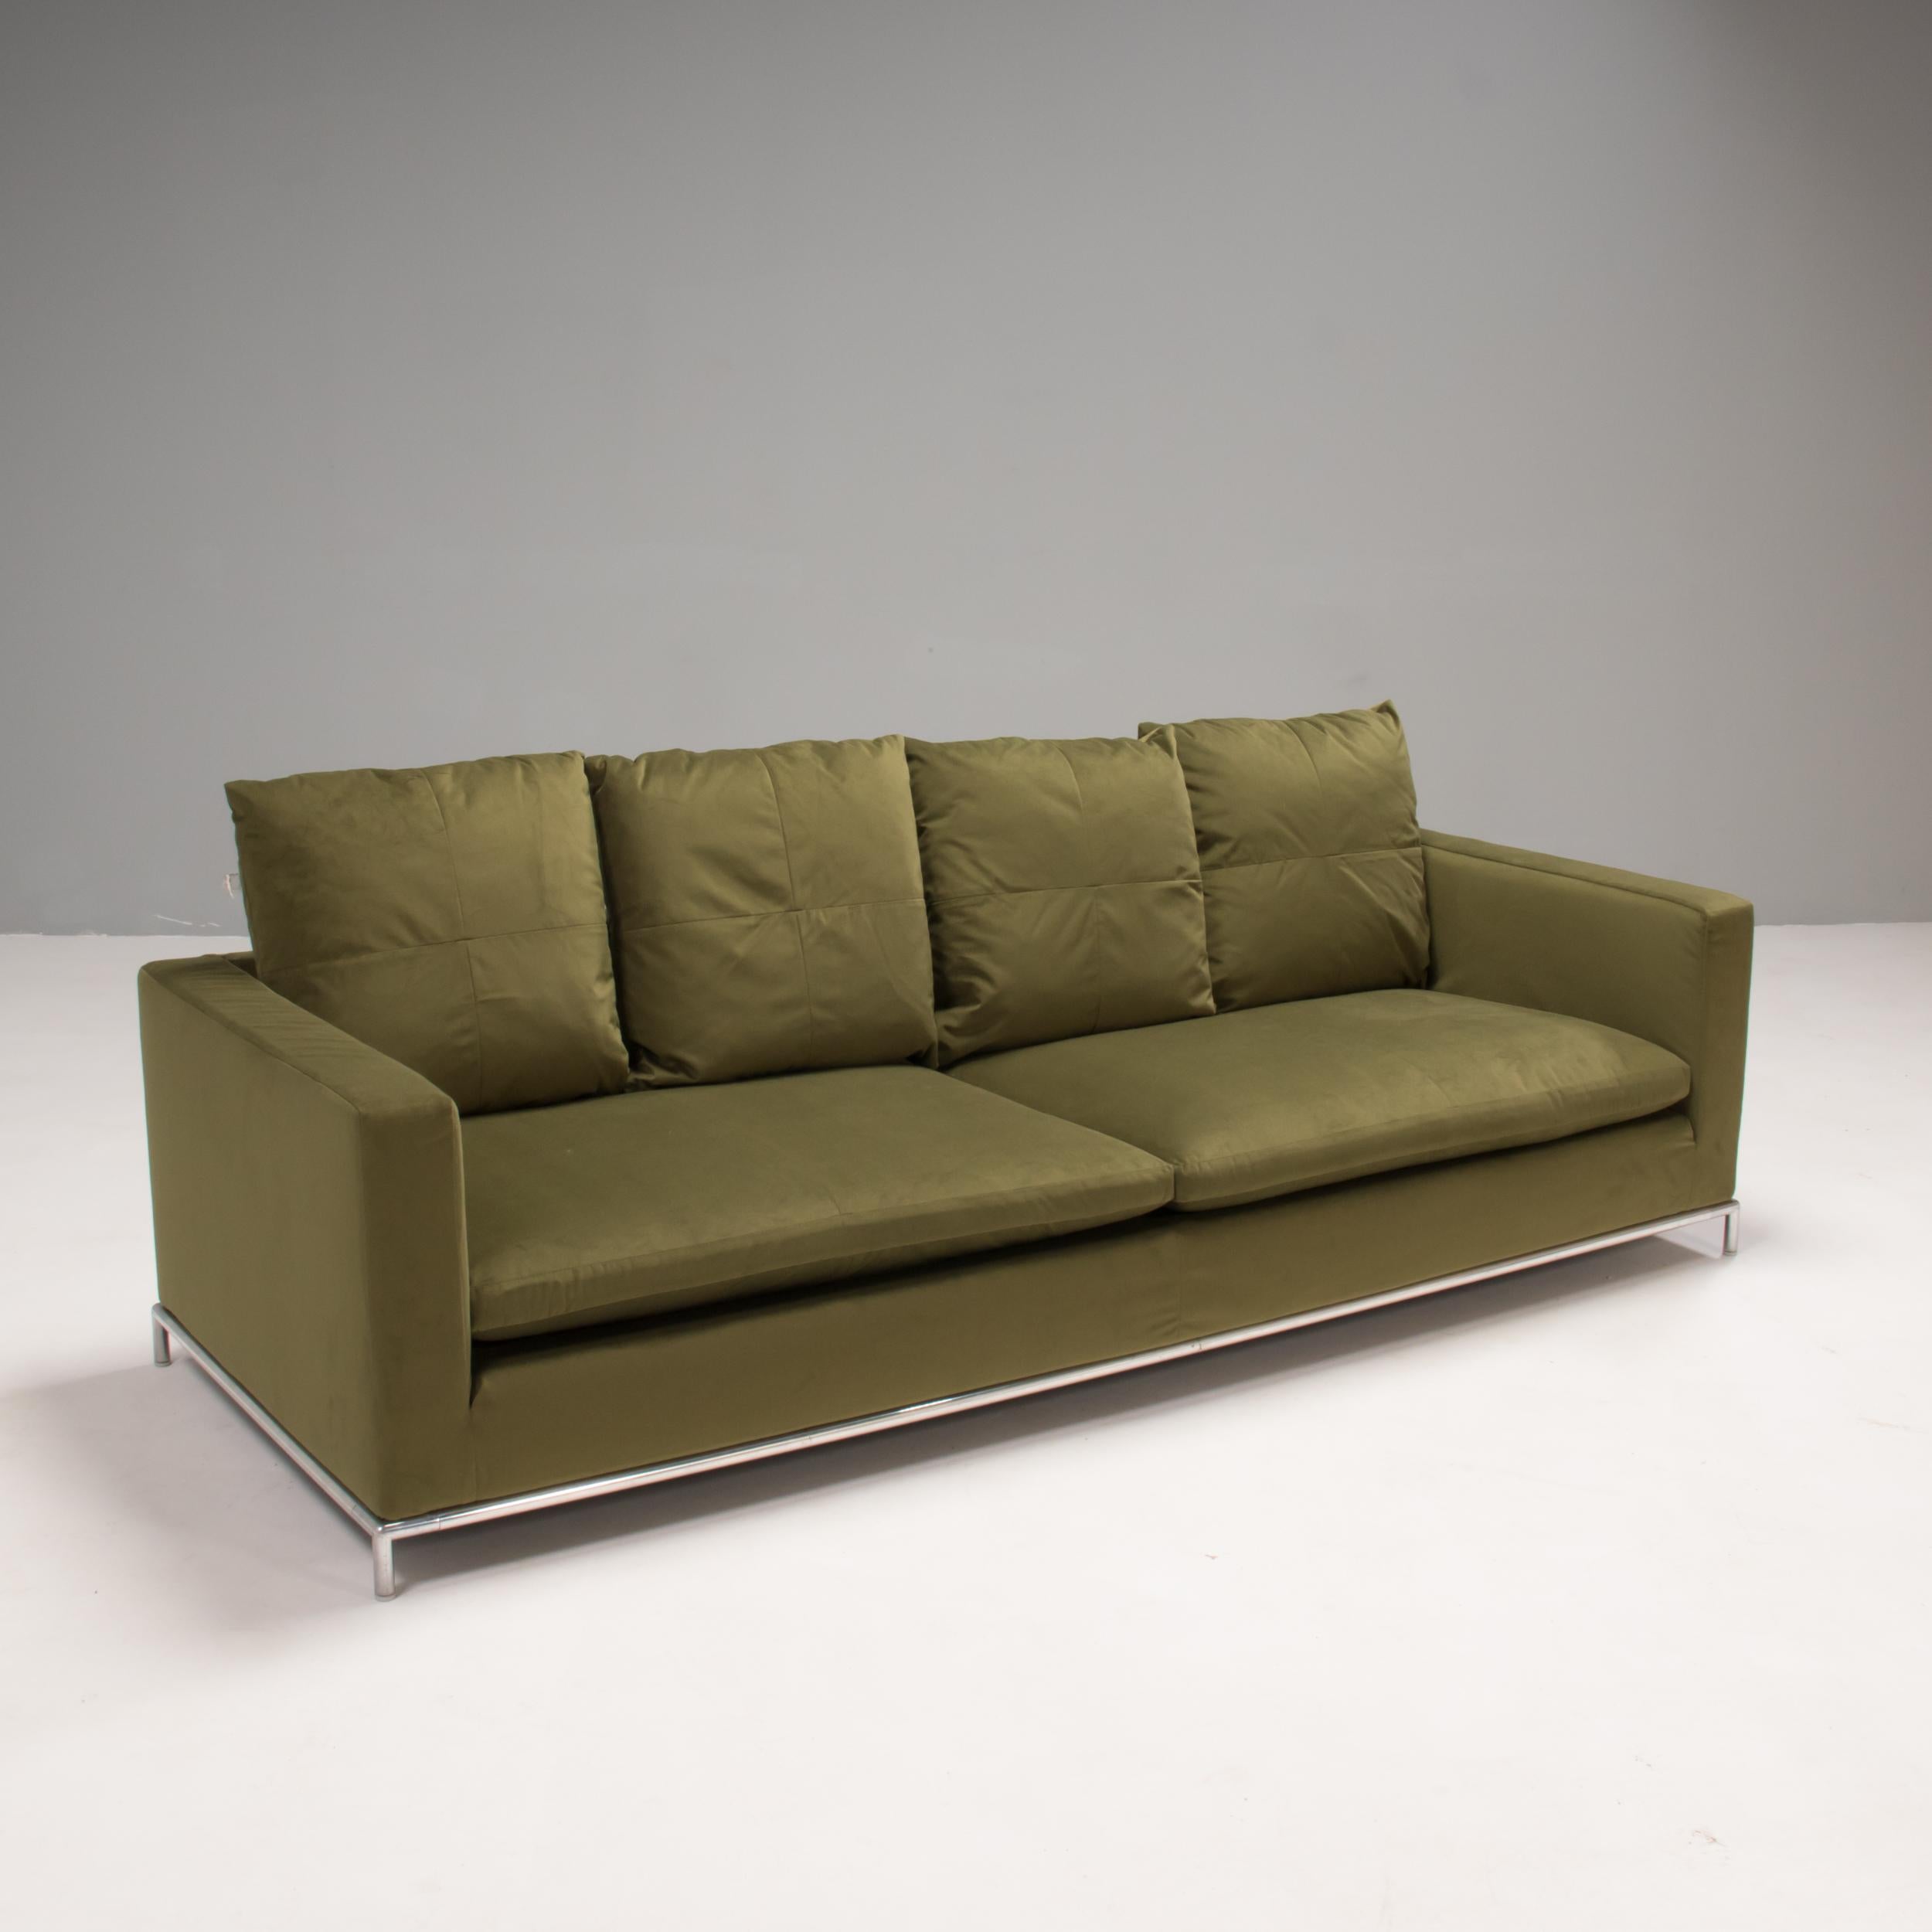 Das 2001 von Antonio Citterio für B&B Italia entworfene viersitzige Sofa George bietet Komfort und Stil. 

Das Sofa hat ein schlankes Stahlrohrgestell mit Schutzgleitern und ist vollständig mit einem schönen olivgrünen, weichen Samt